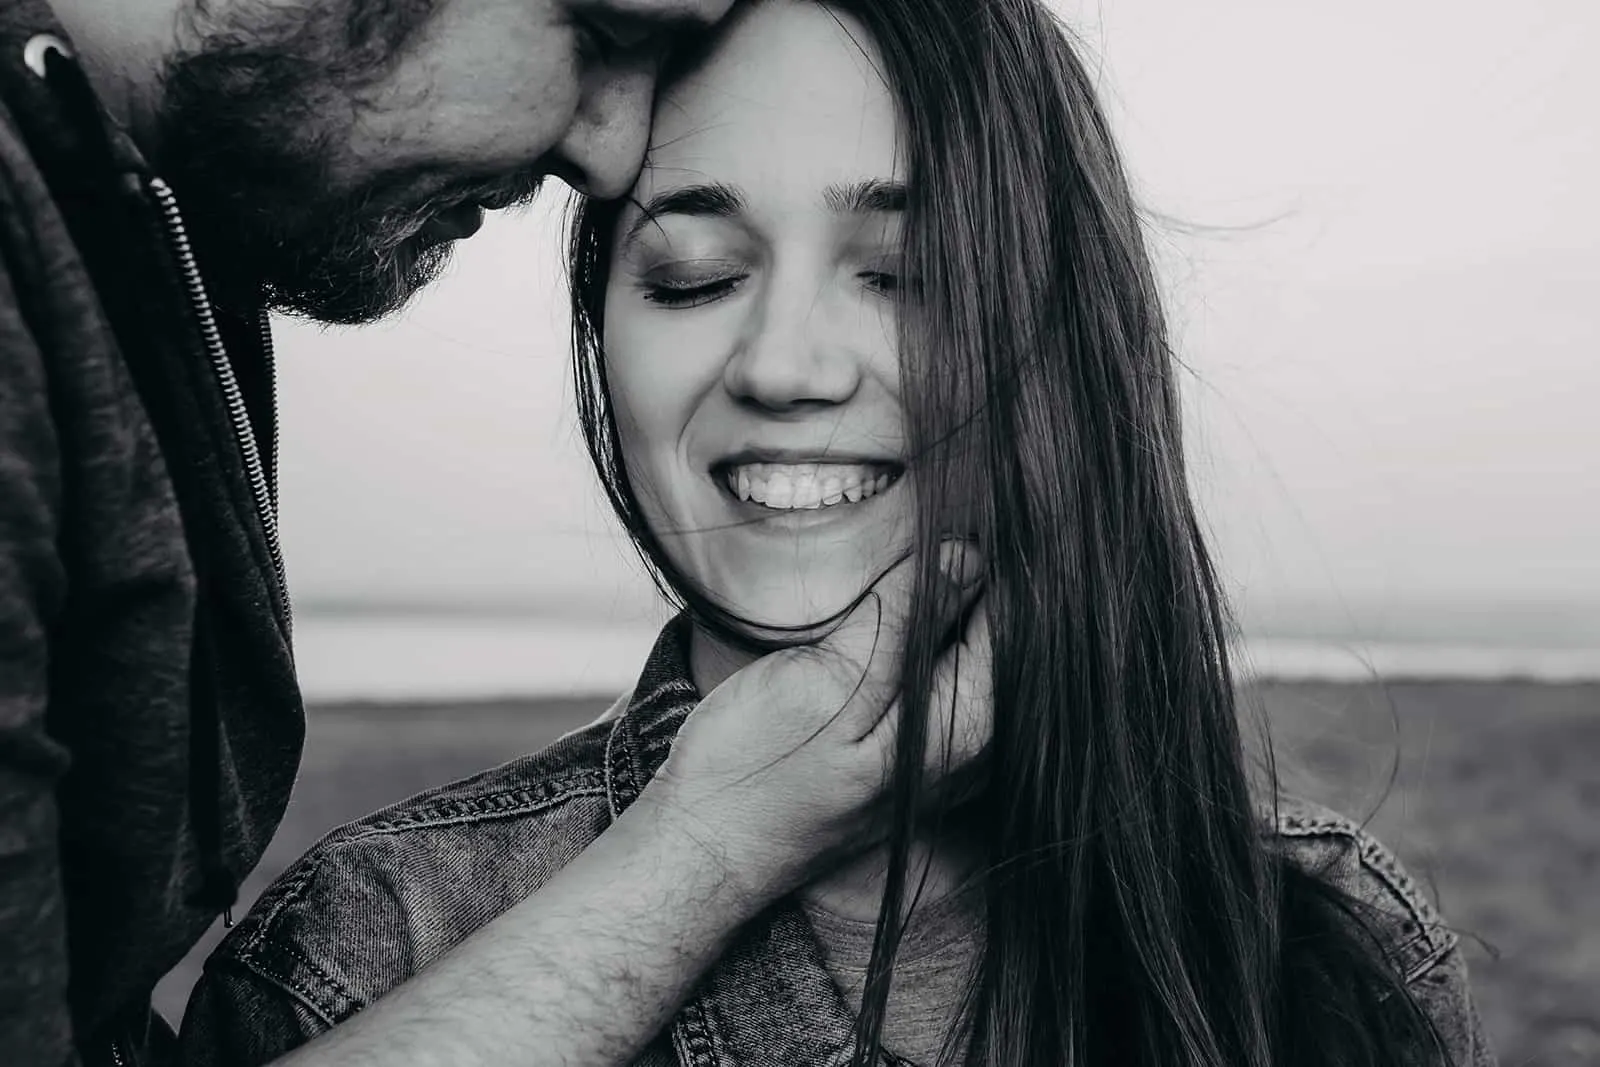 Ein lächelndes Mädchen schloss die Augen und ein Mann berührte ihr Gesicht